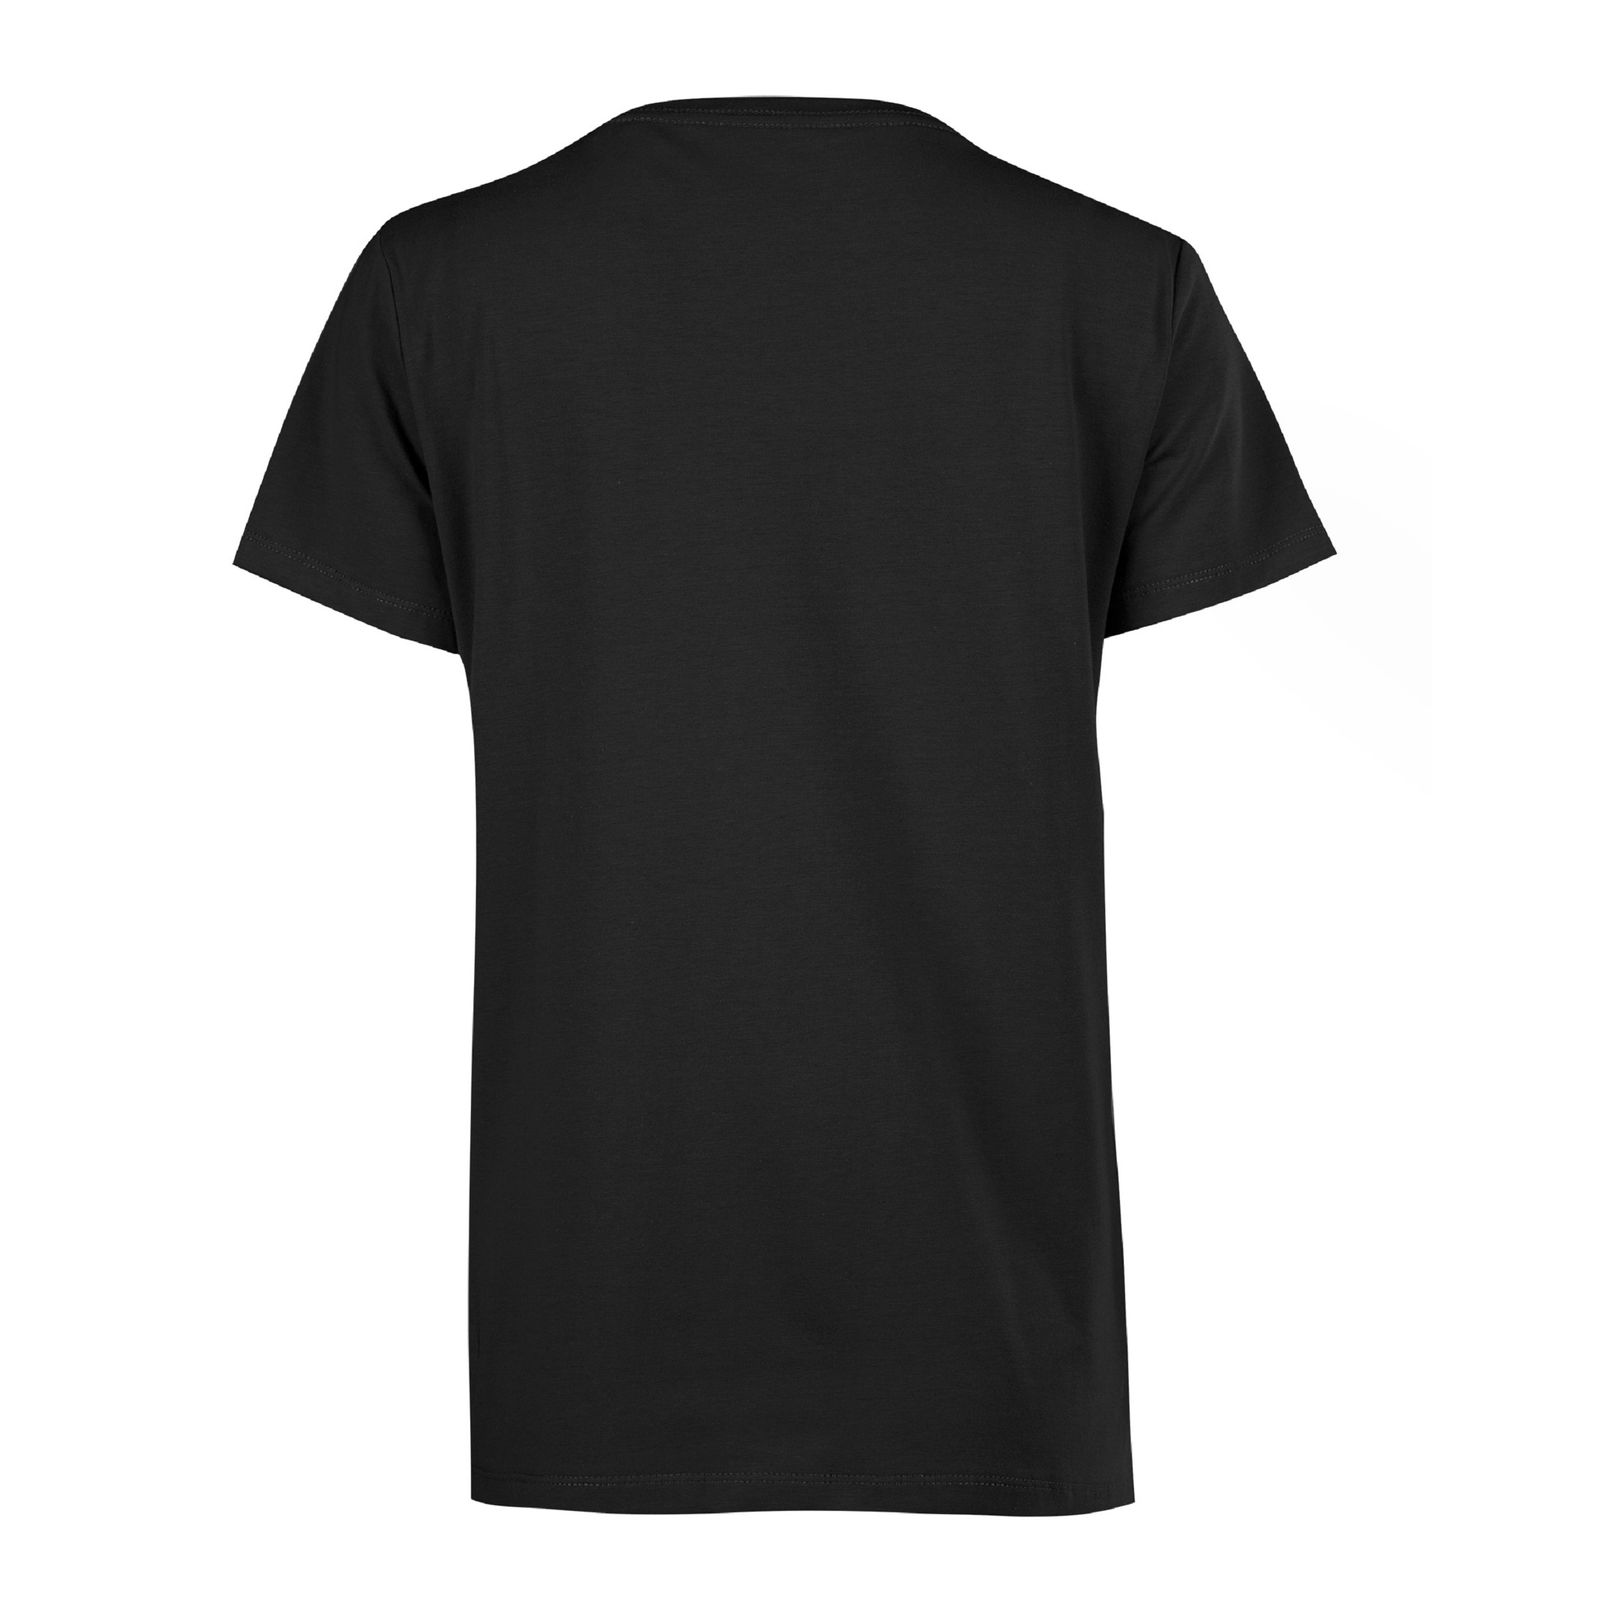 تی شرت آستین کوتاه زنانه جوتی جینز مدل یقه گرد کد 1551344 رنگ مشکی -  - 2